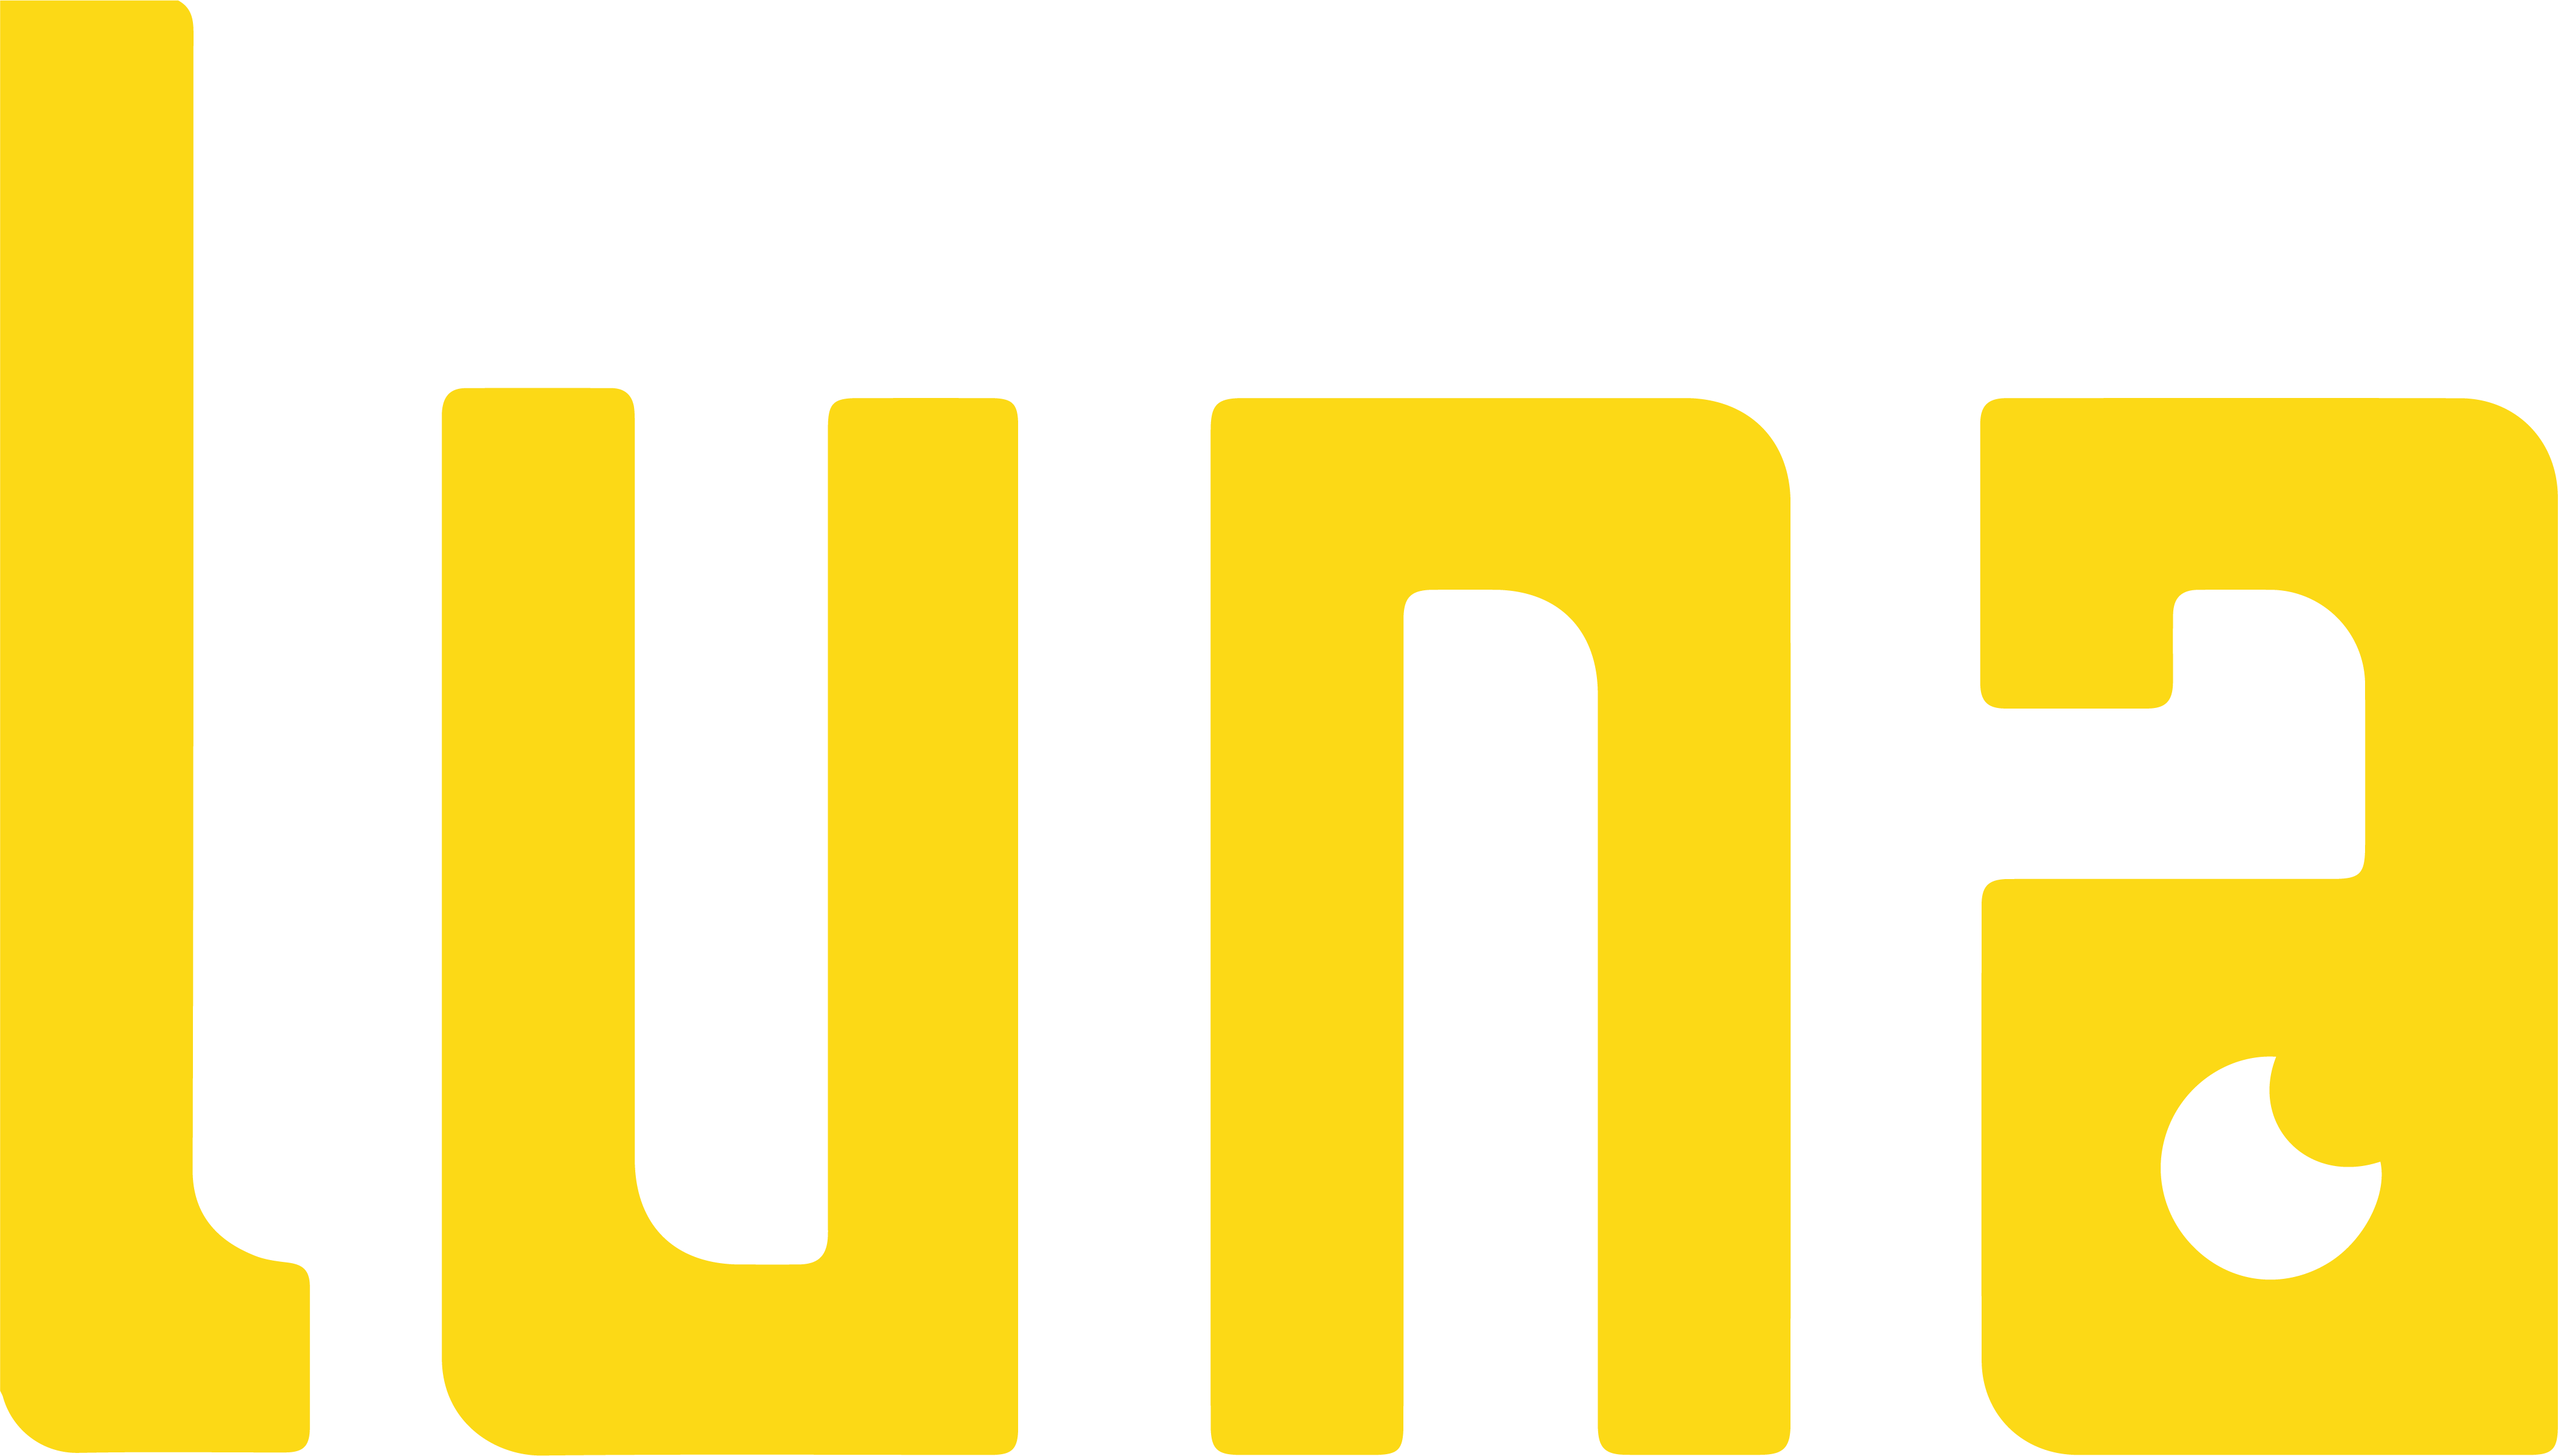 Luna Games Oyun Yazılım ve Pazarlama Limited Şirketi